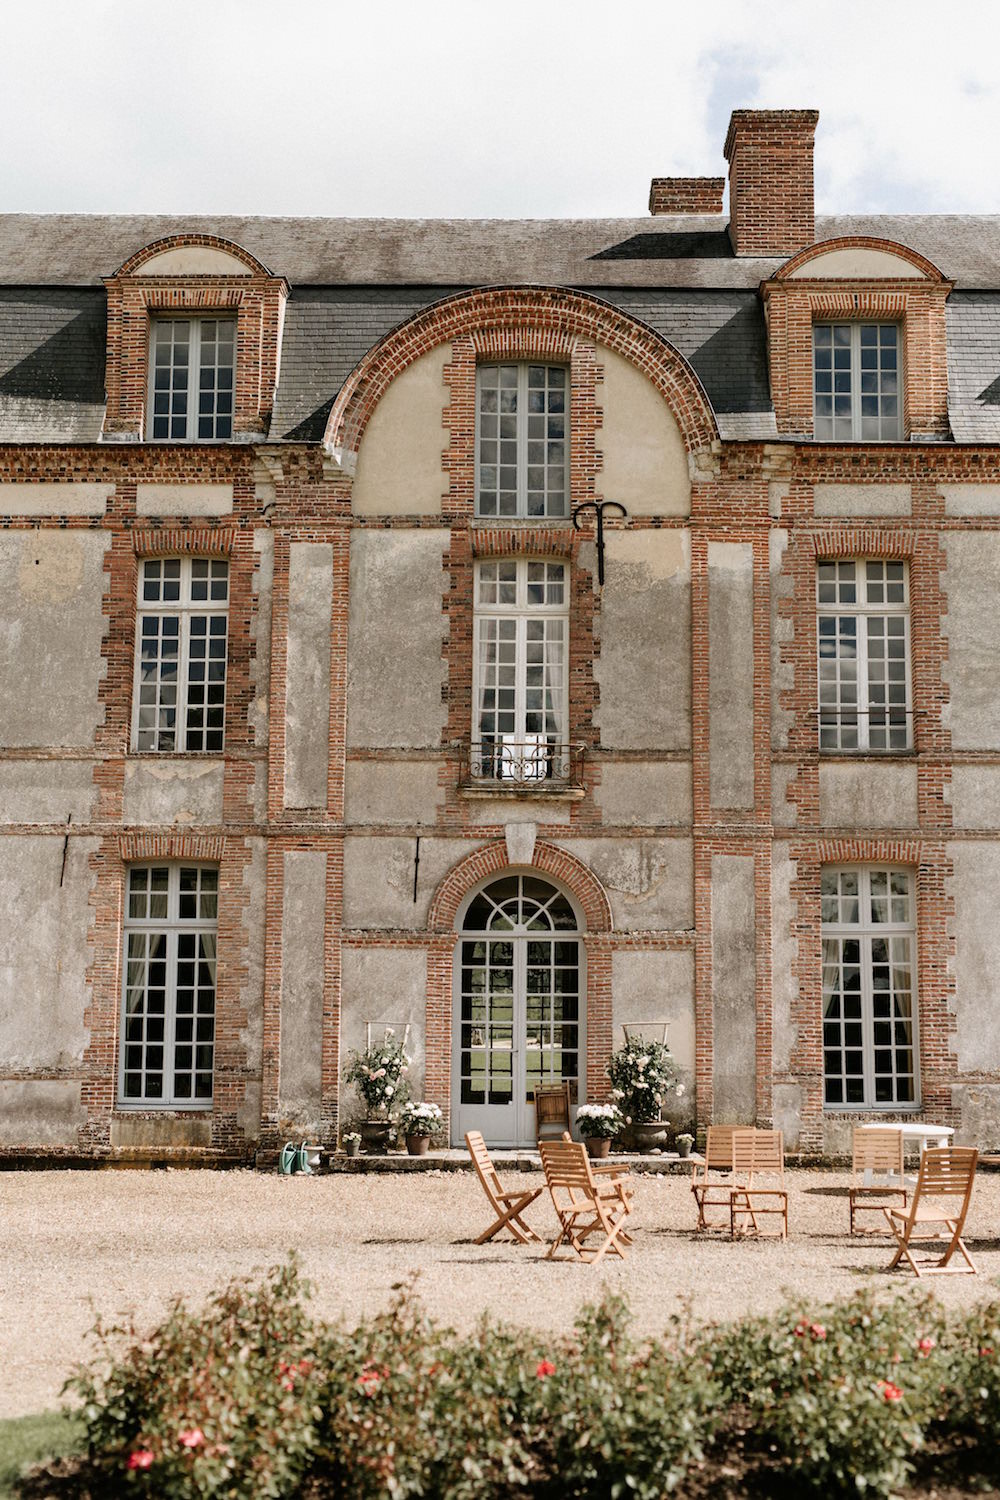 Mariage au Château de Montigny-sur-Avre - Lucie + Pierre - Blog Mariage Madame C